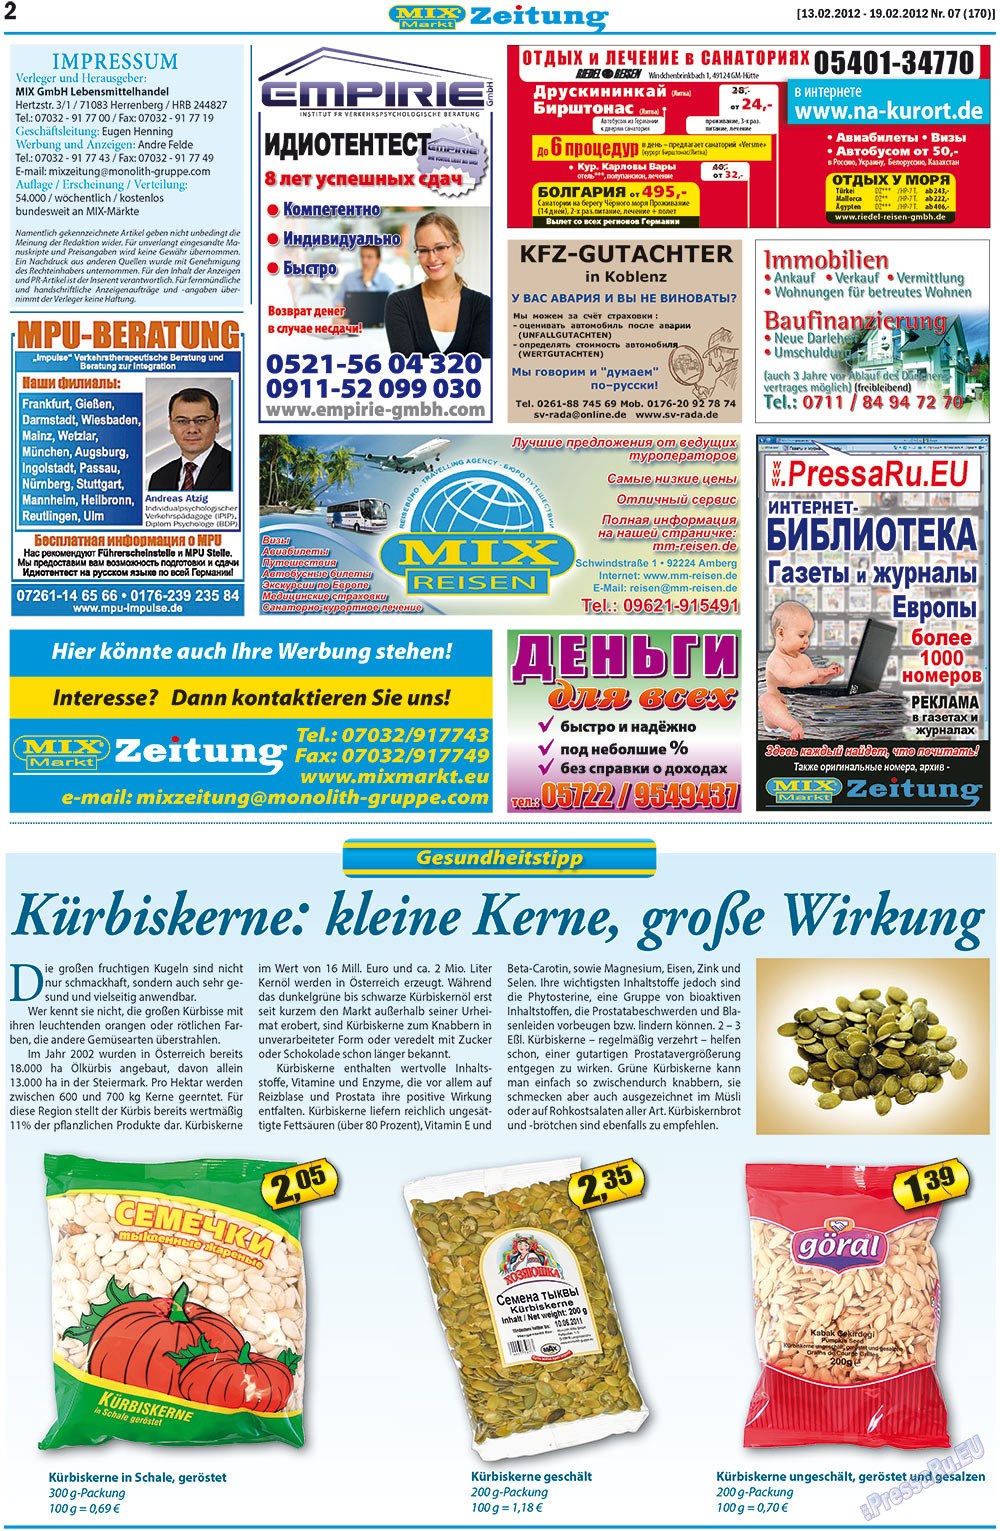 MIX-Markt Zeitung, газета. 2012 №7 стр.2